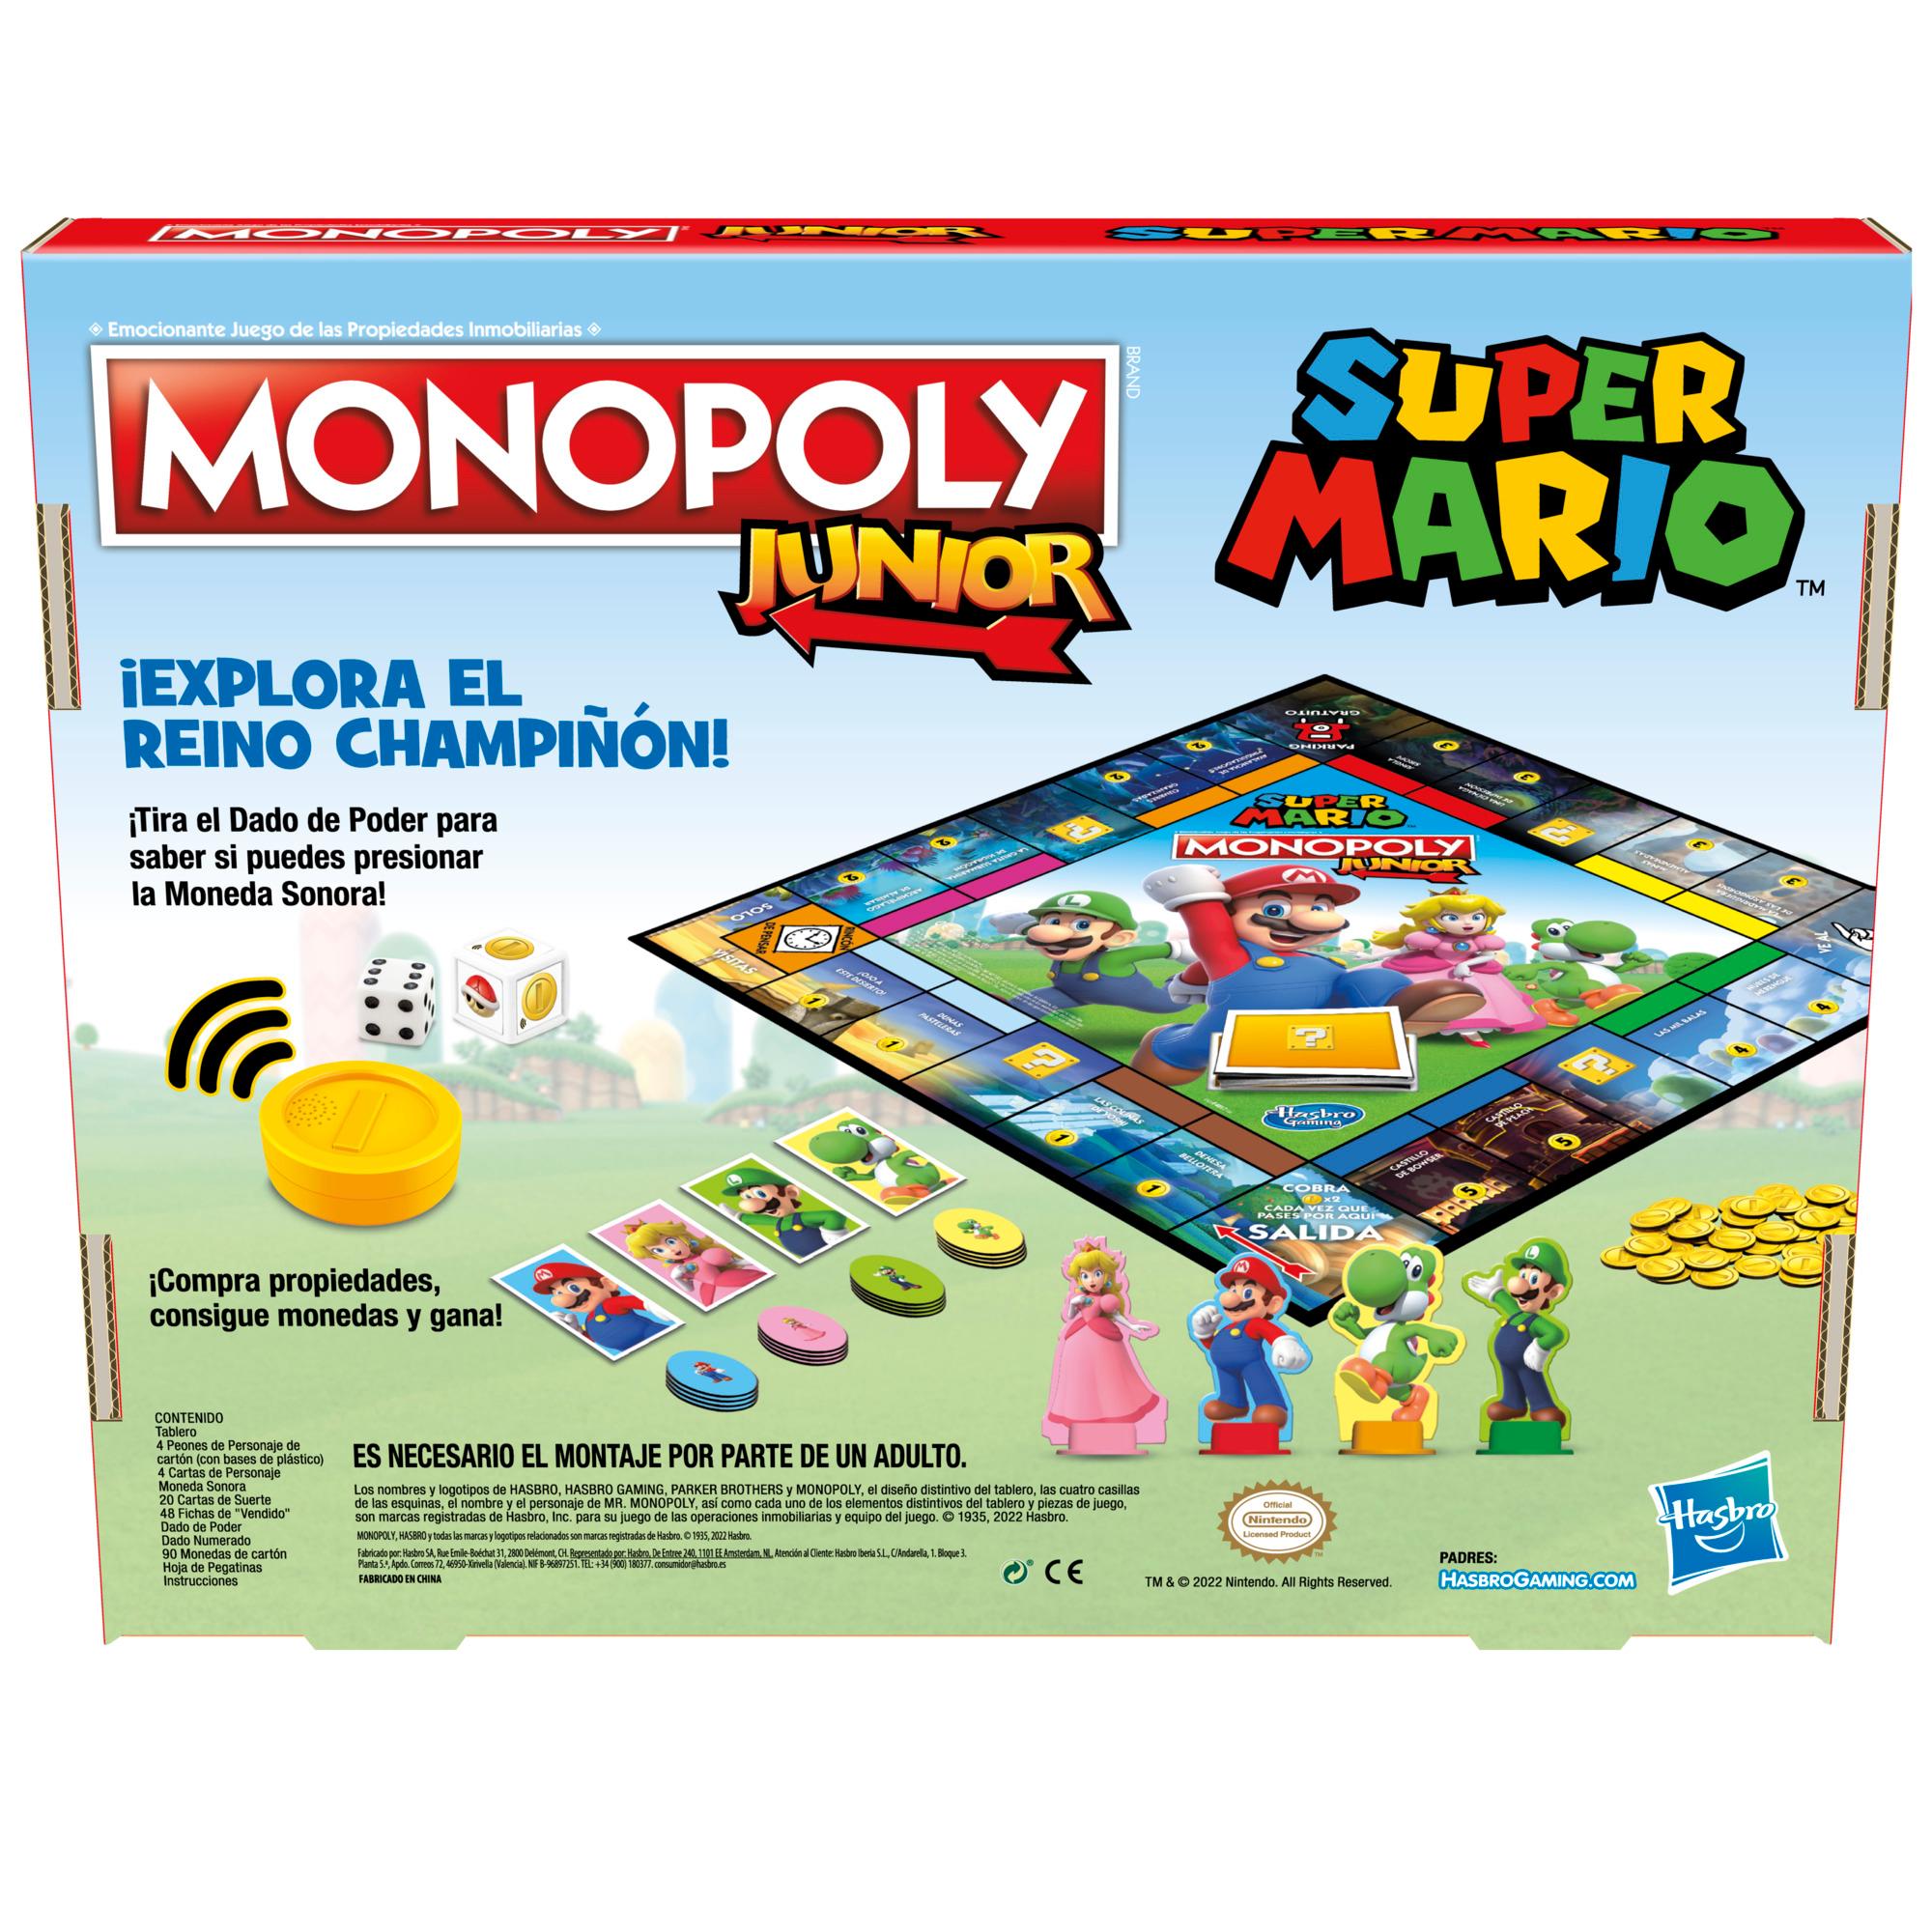 Unidad mezcla Puerto marítimo MONOPOLY JR SUPER MARIO EDITION - Monopoly